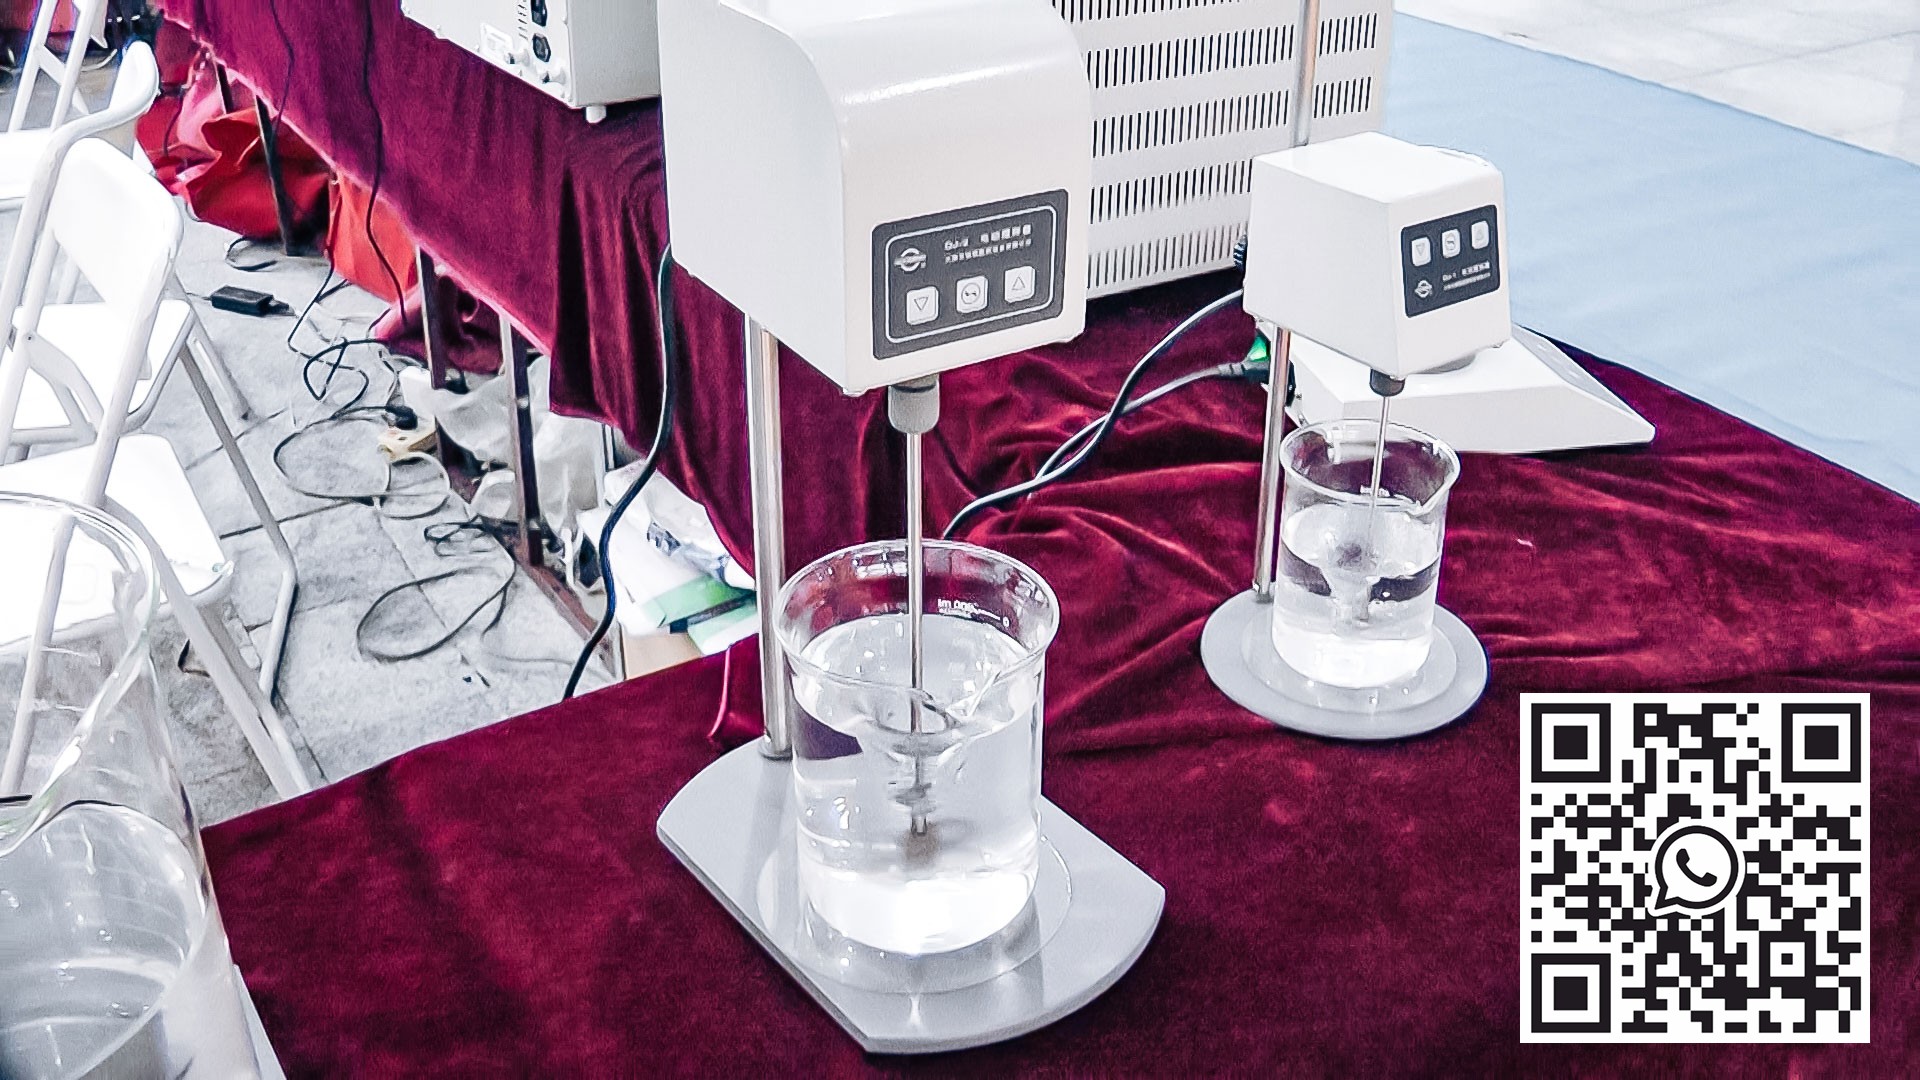 Équipement automatique pour tester la vitesse de dissolution des comprimés dans la production pharmaceutique